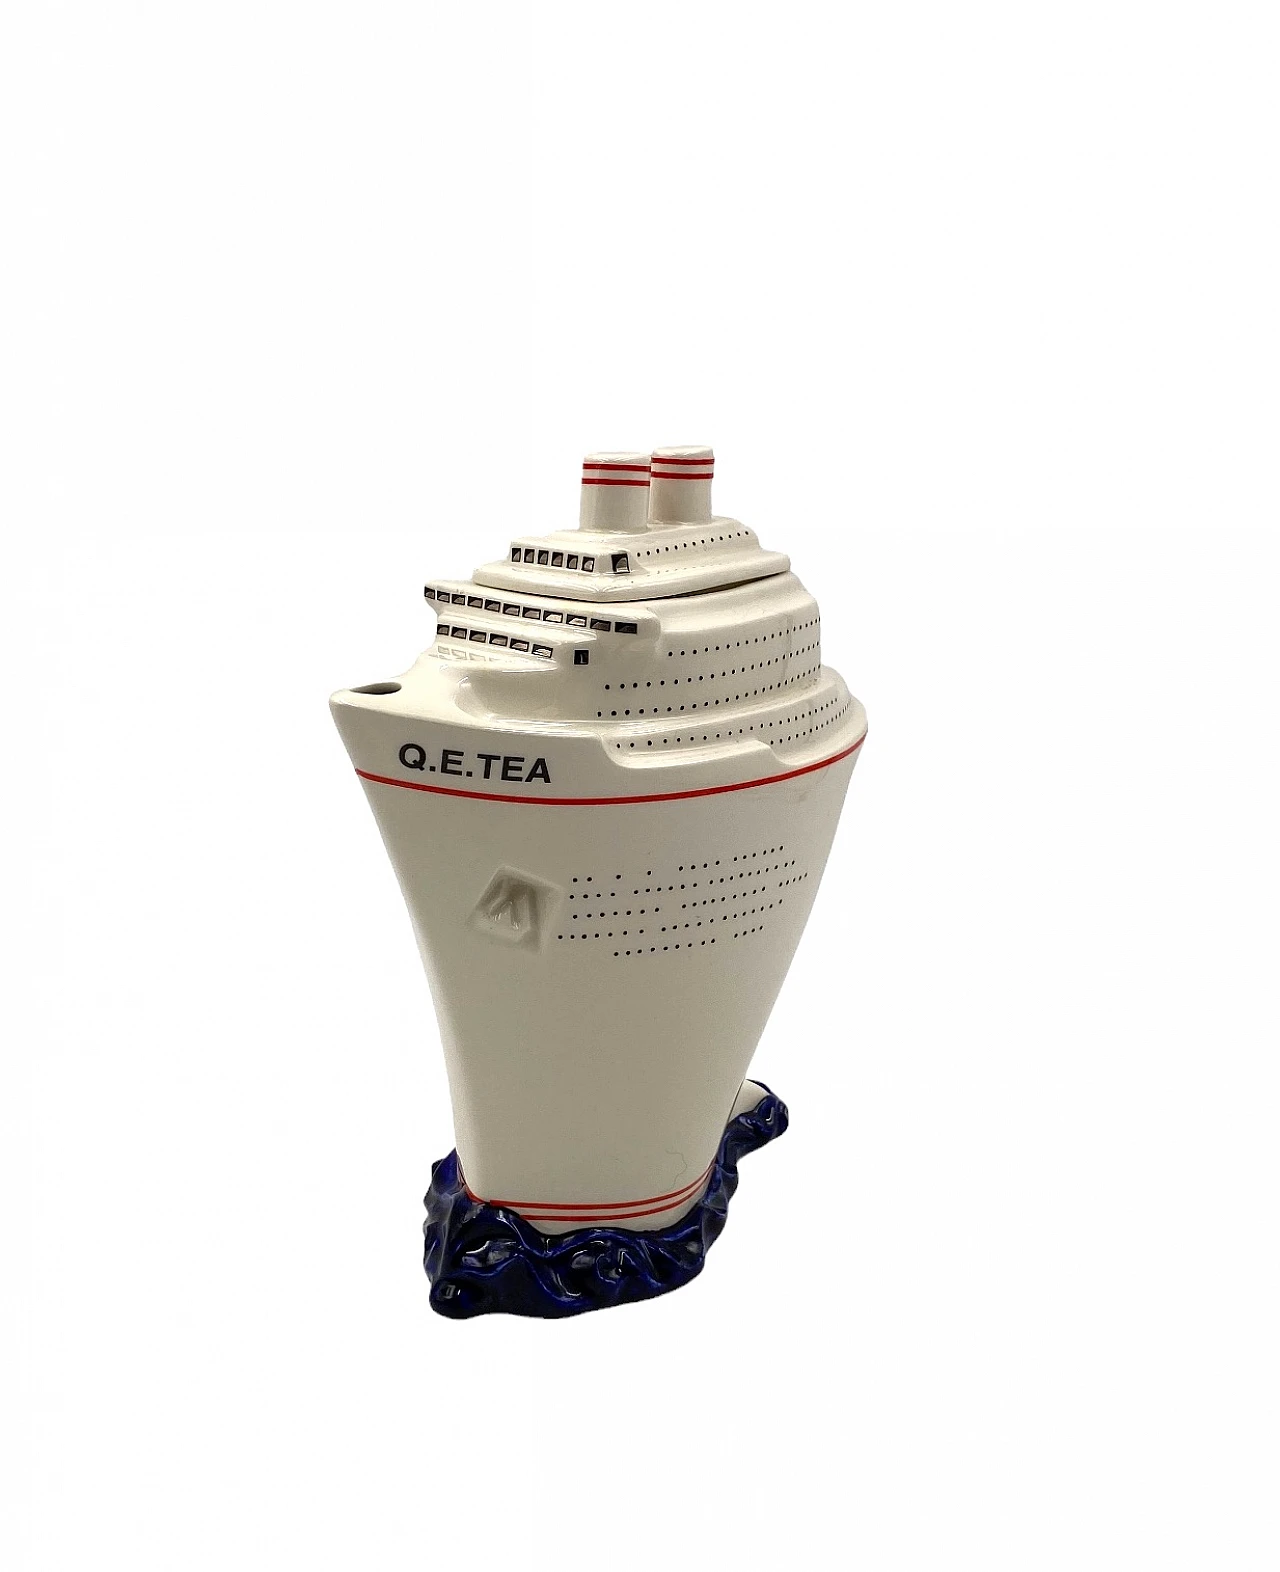 Queen Elizabeth II cruise ship teapot by Paul Cardew 13